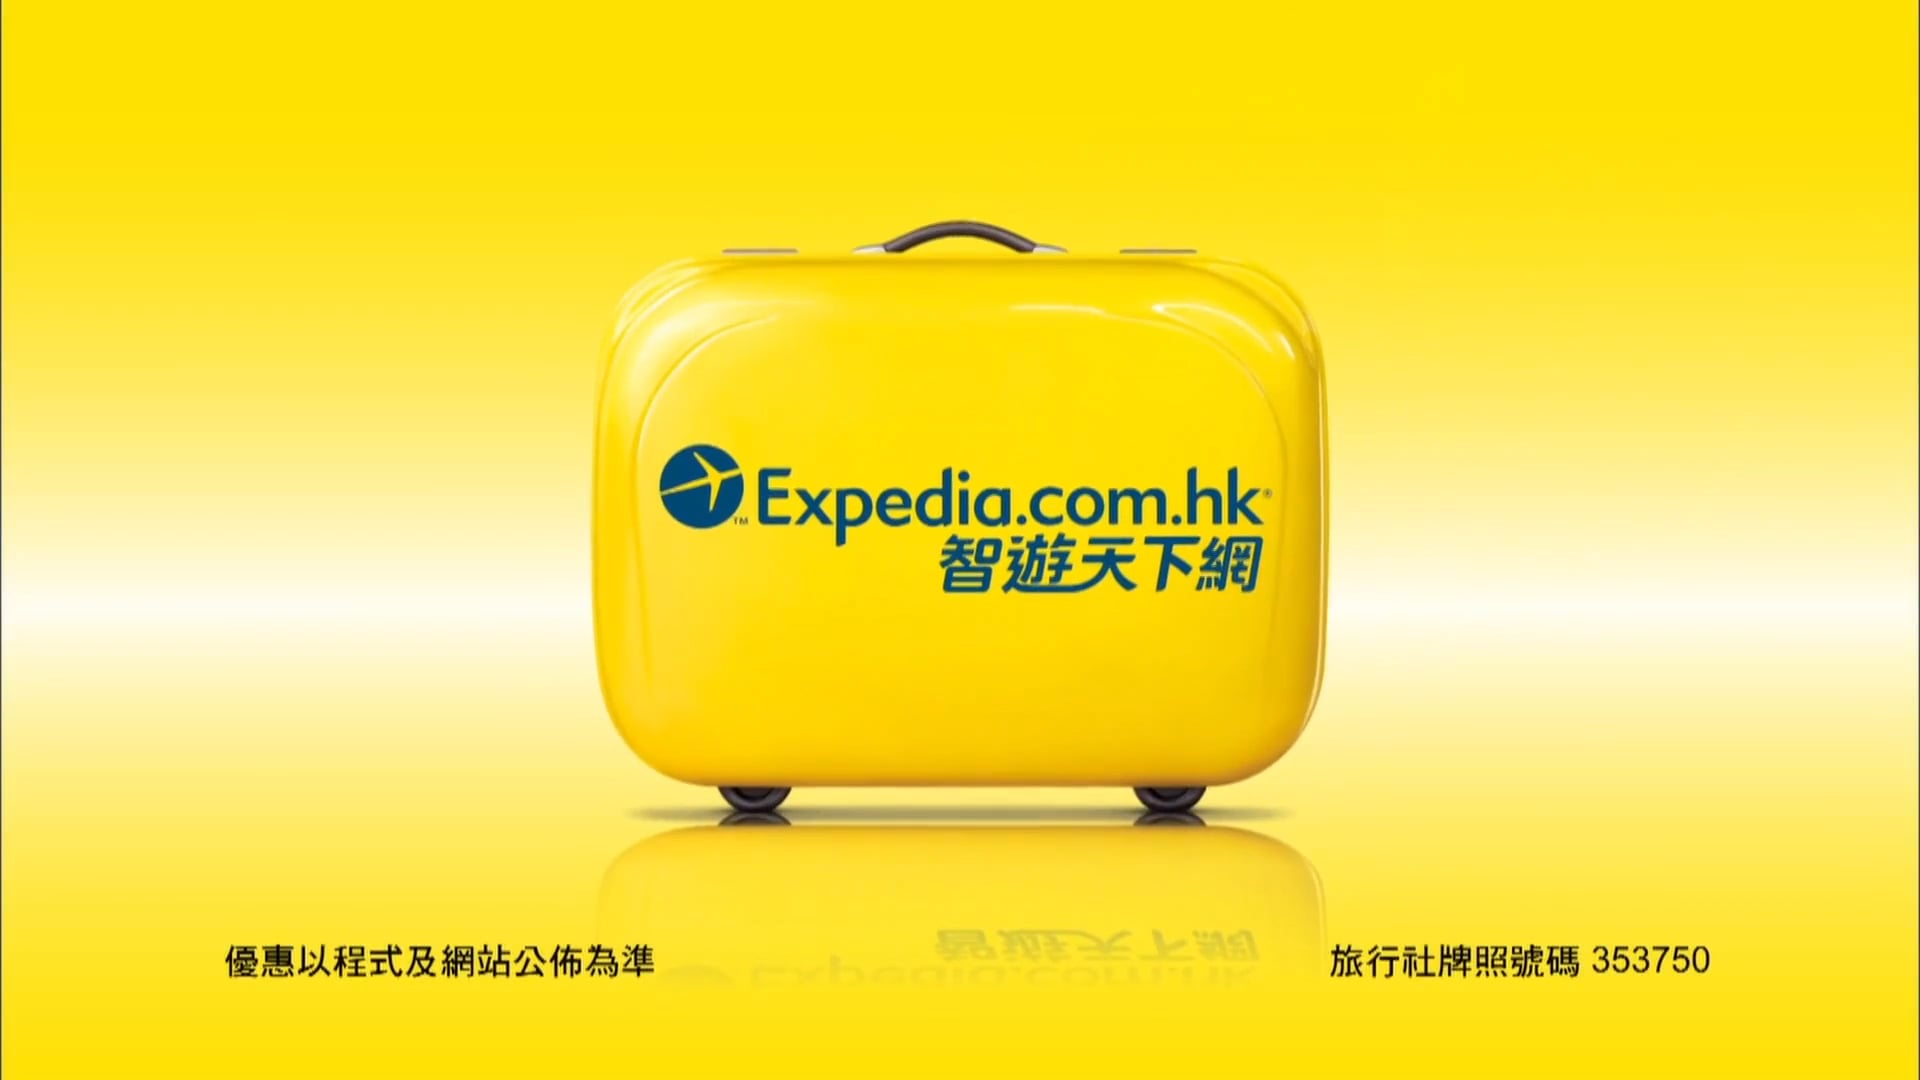 Expedia.com - 2014電視廣告